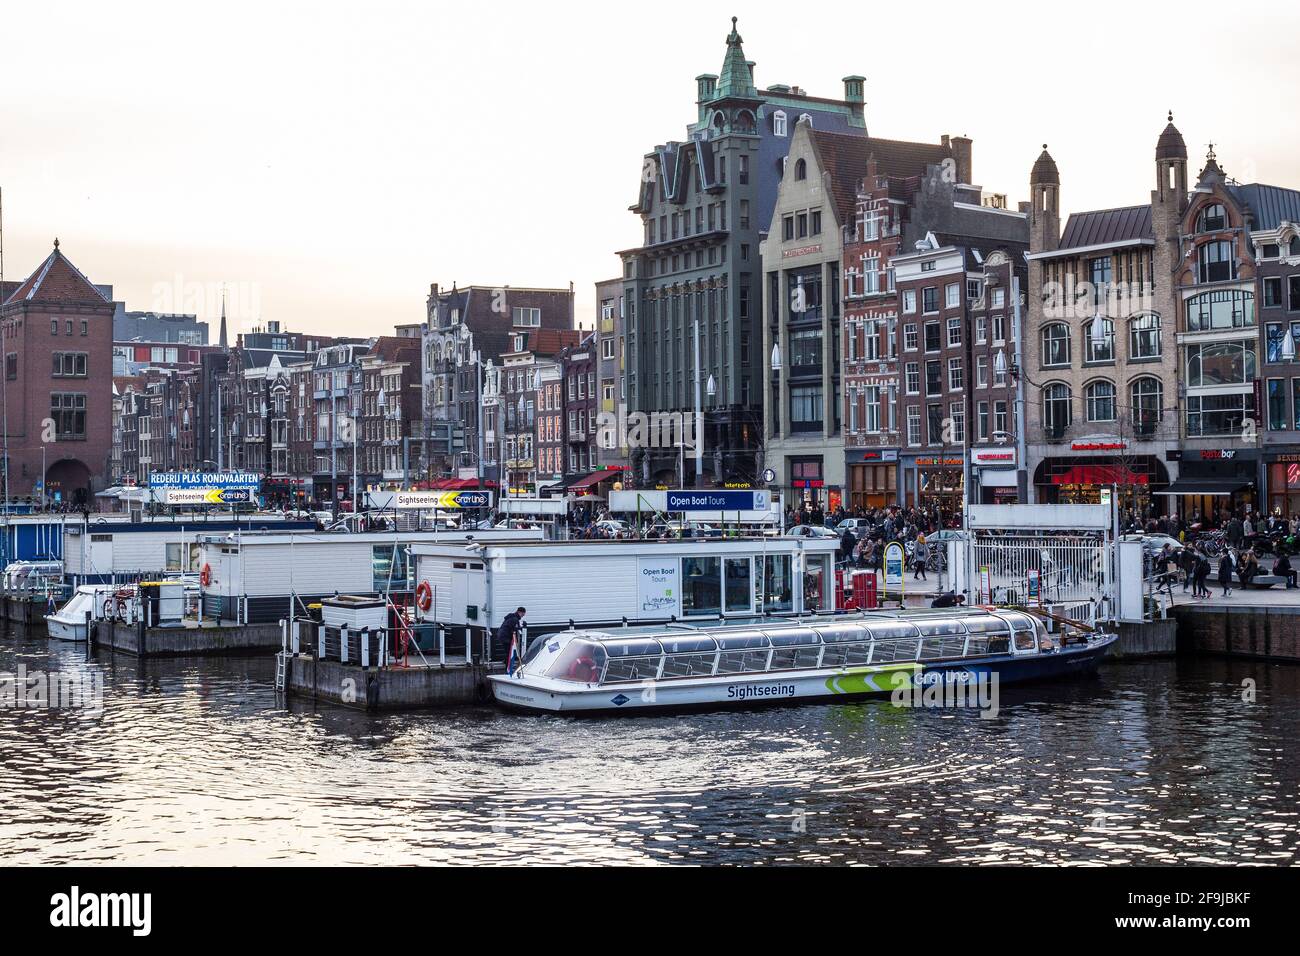 Amsterdam, pays-Bas - 11 mars 2017 : vue sur les bâtiments traditionnels colorés de la vieille ville d'Amsterdam Banque D'Images